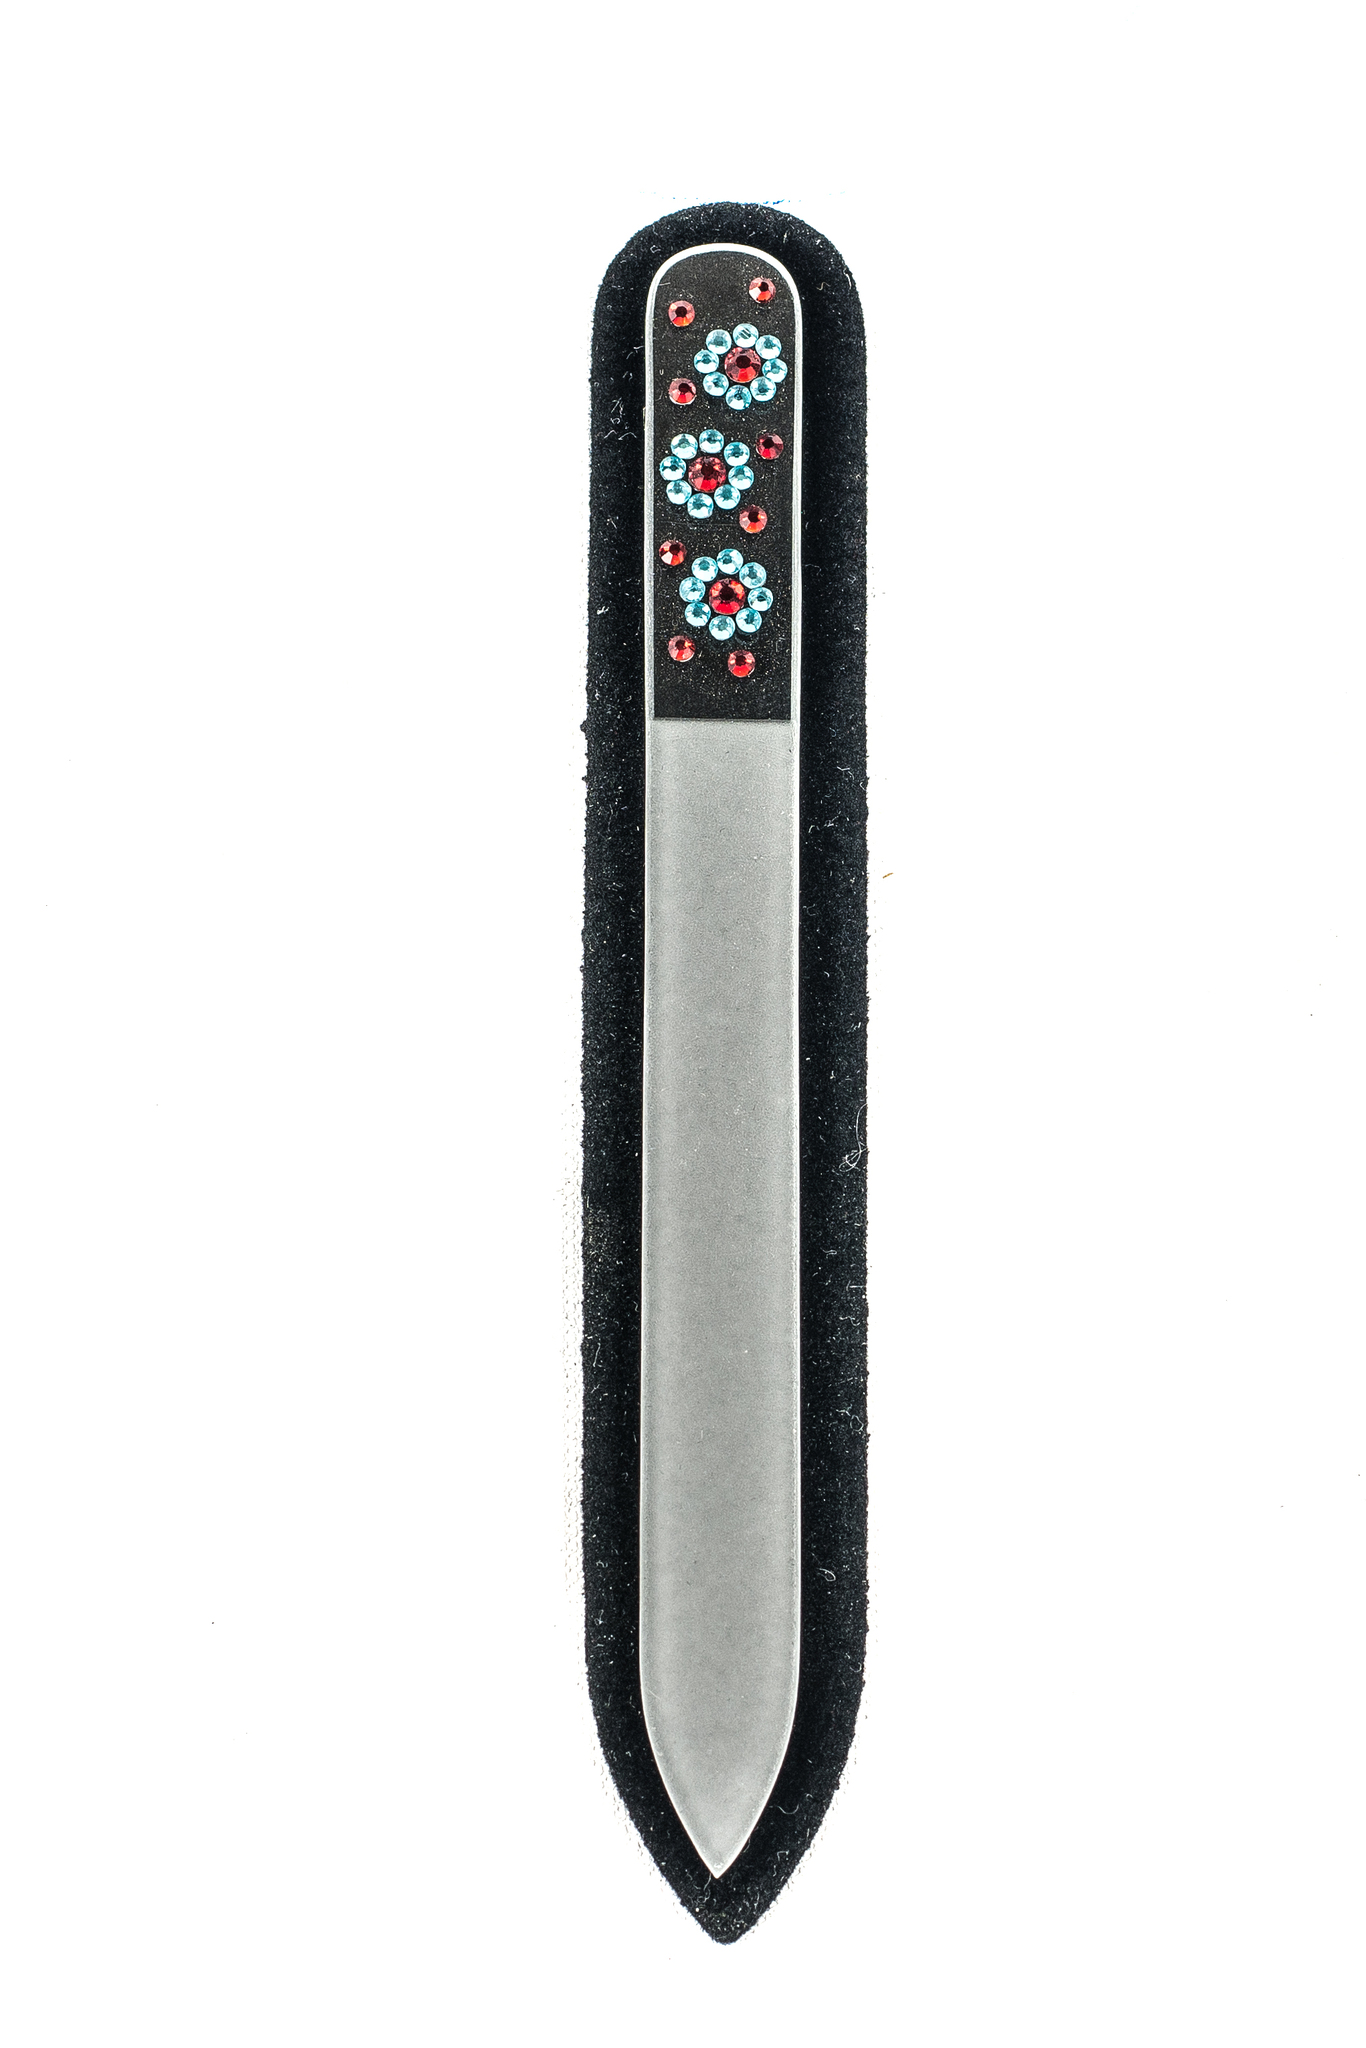 Пилочка для ногтей Chili Swarovski Цветы нежно-голубые 130мм